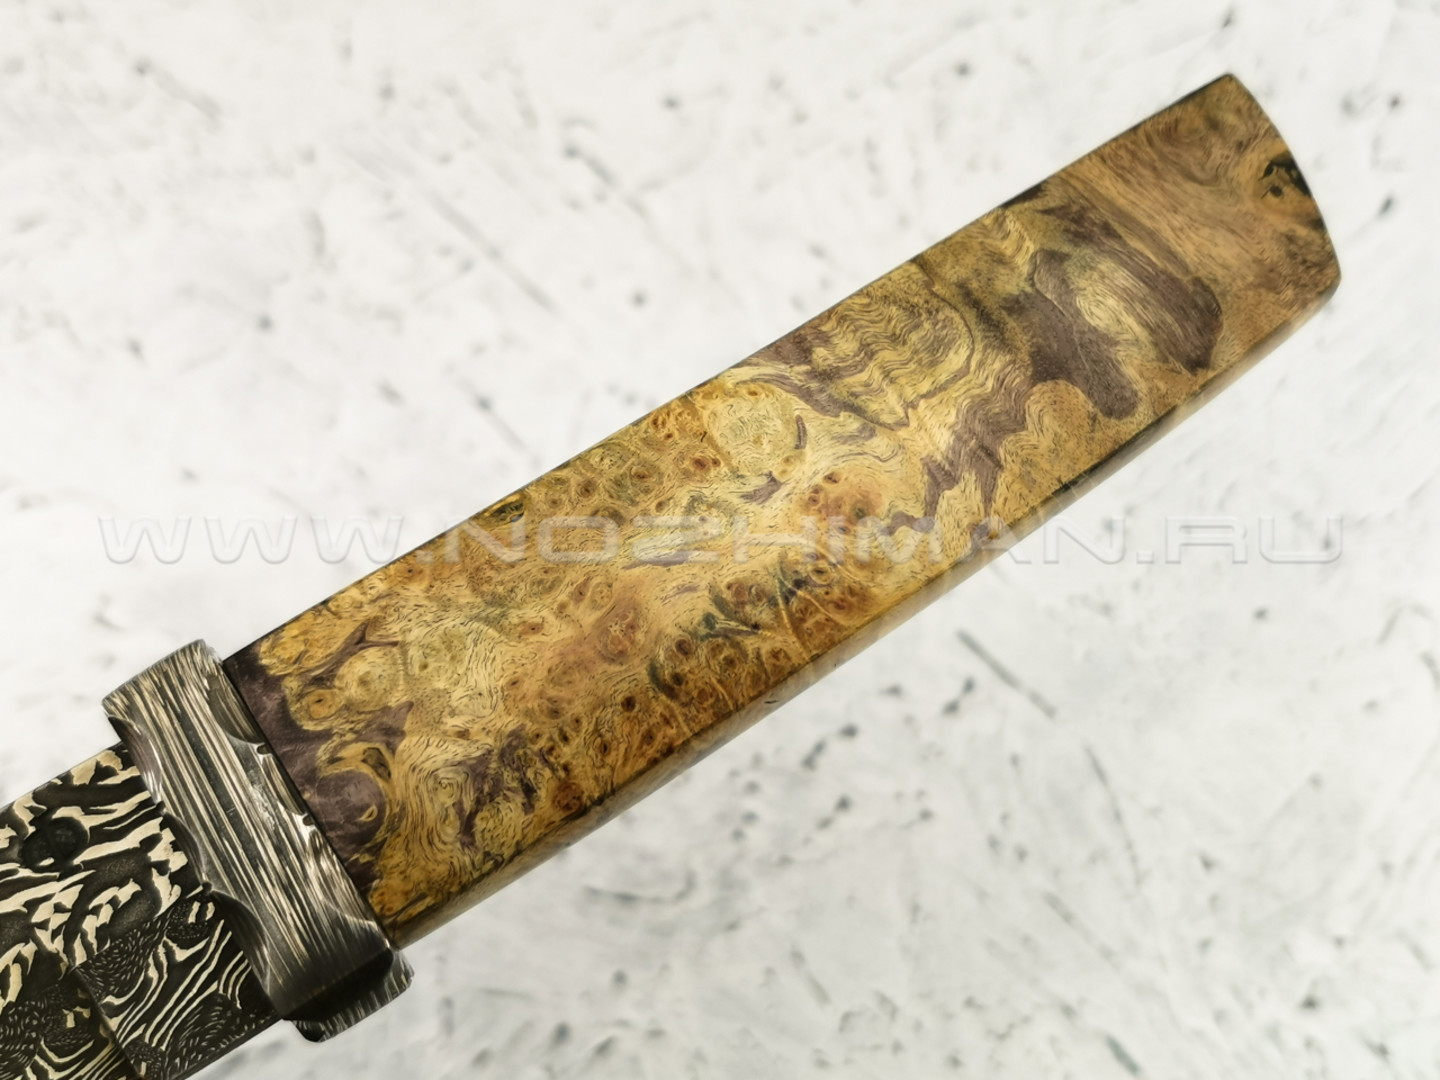 Нож "Японский" дамасская сталь, кап клёна (Федотов А. В.) 035Д68